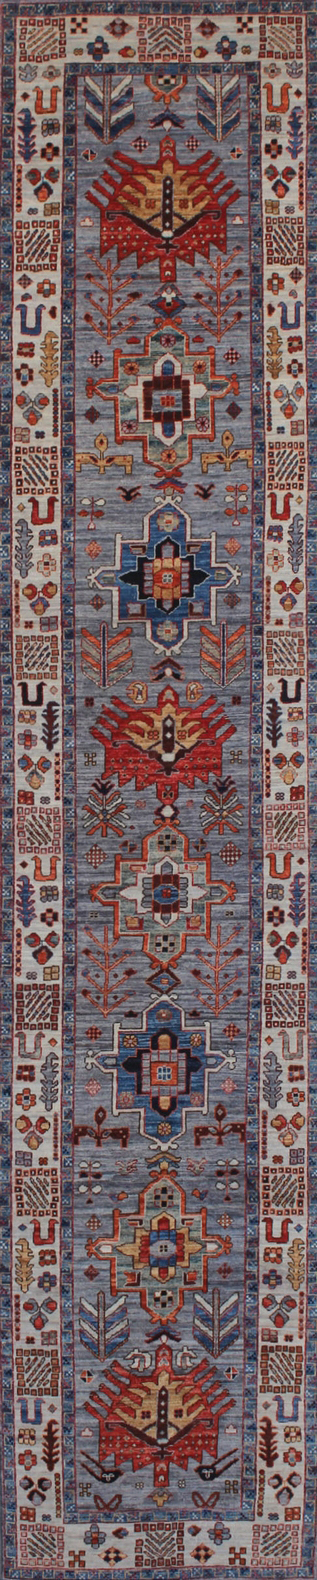 Gray, Red, and Indigo Aryana Runner Carpet - 2'8"x13'5"